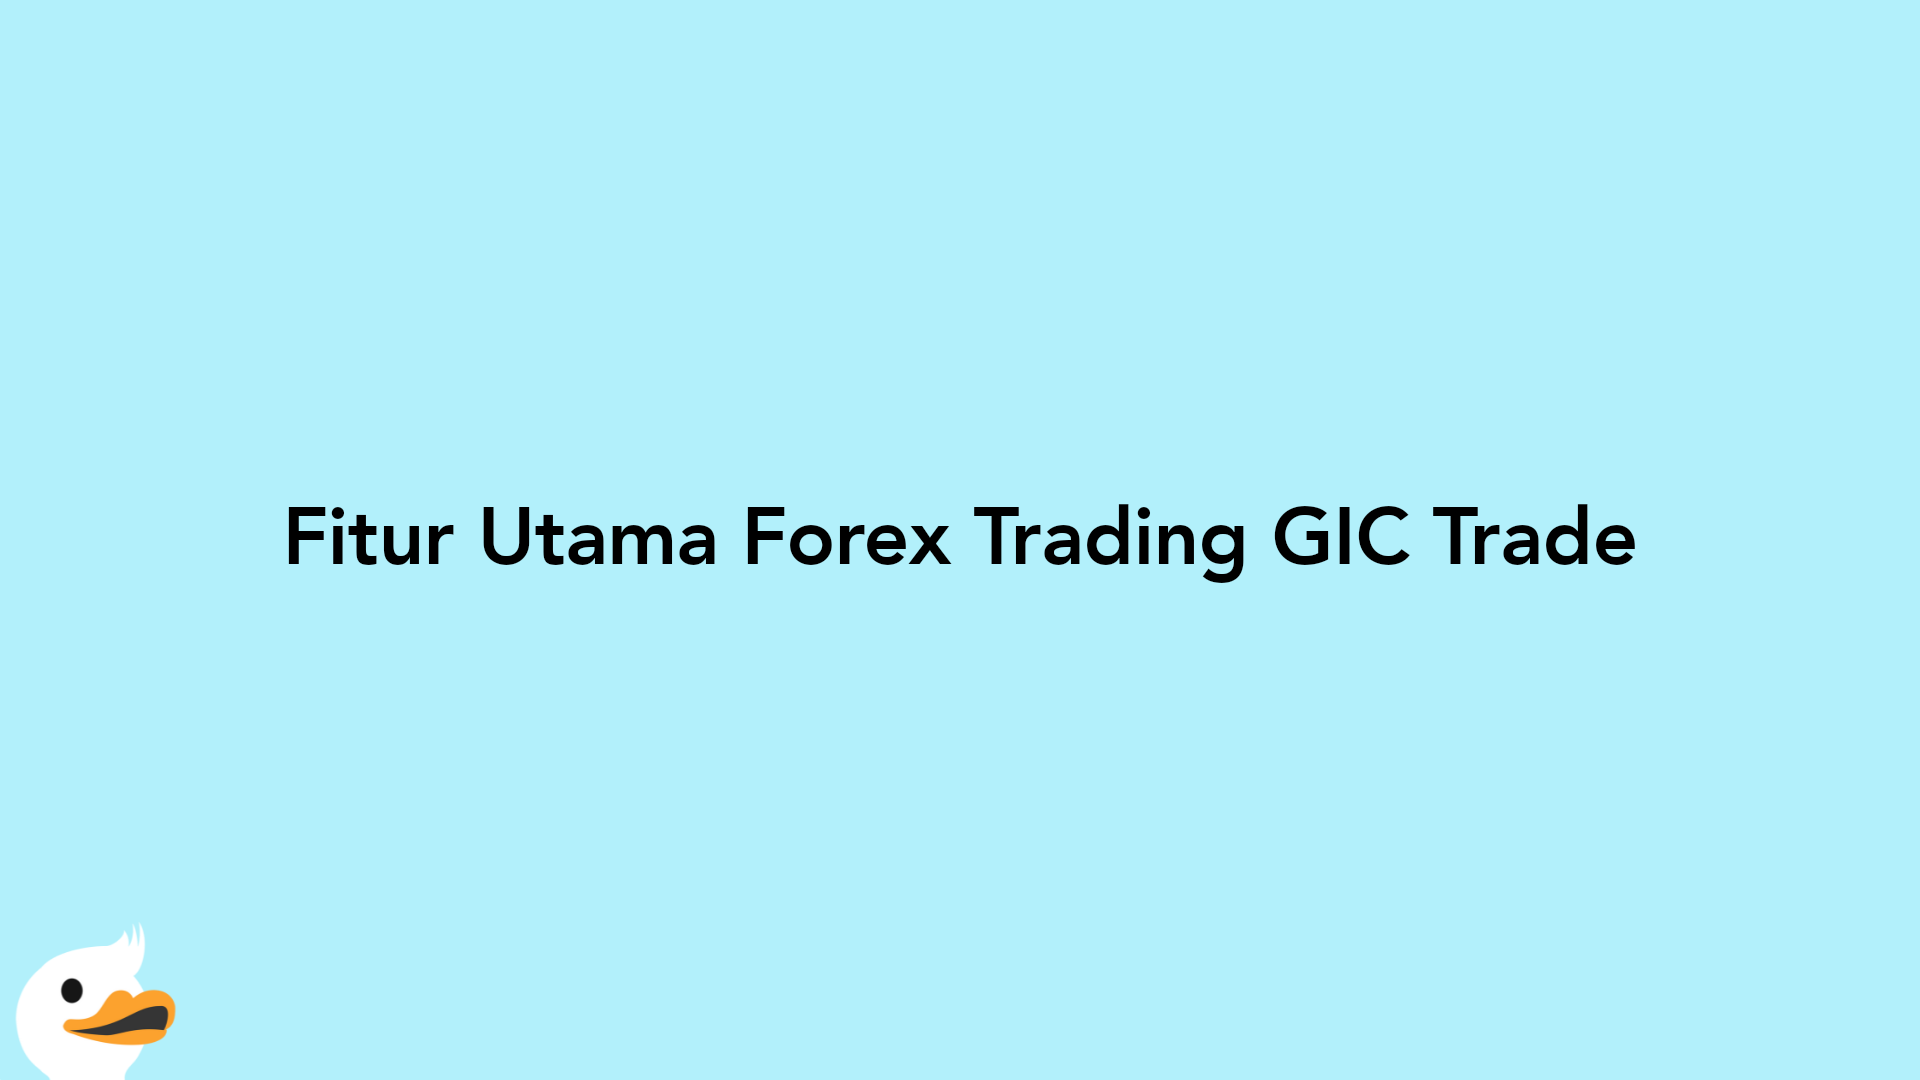 Fitur Utama Forex Trading GIC Trade